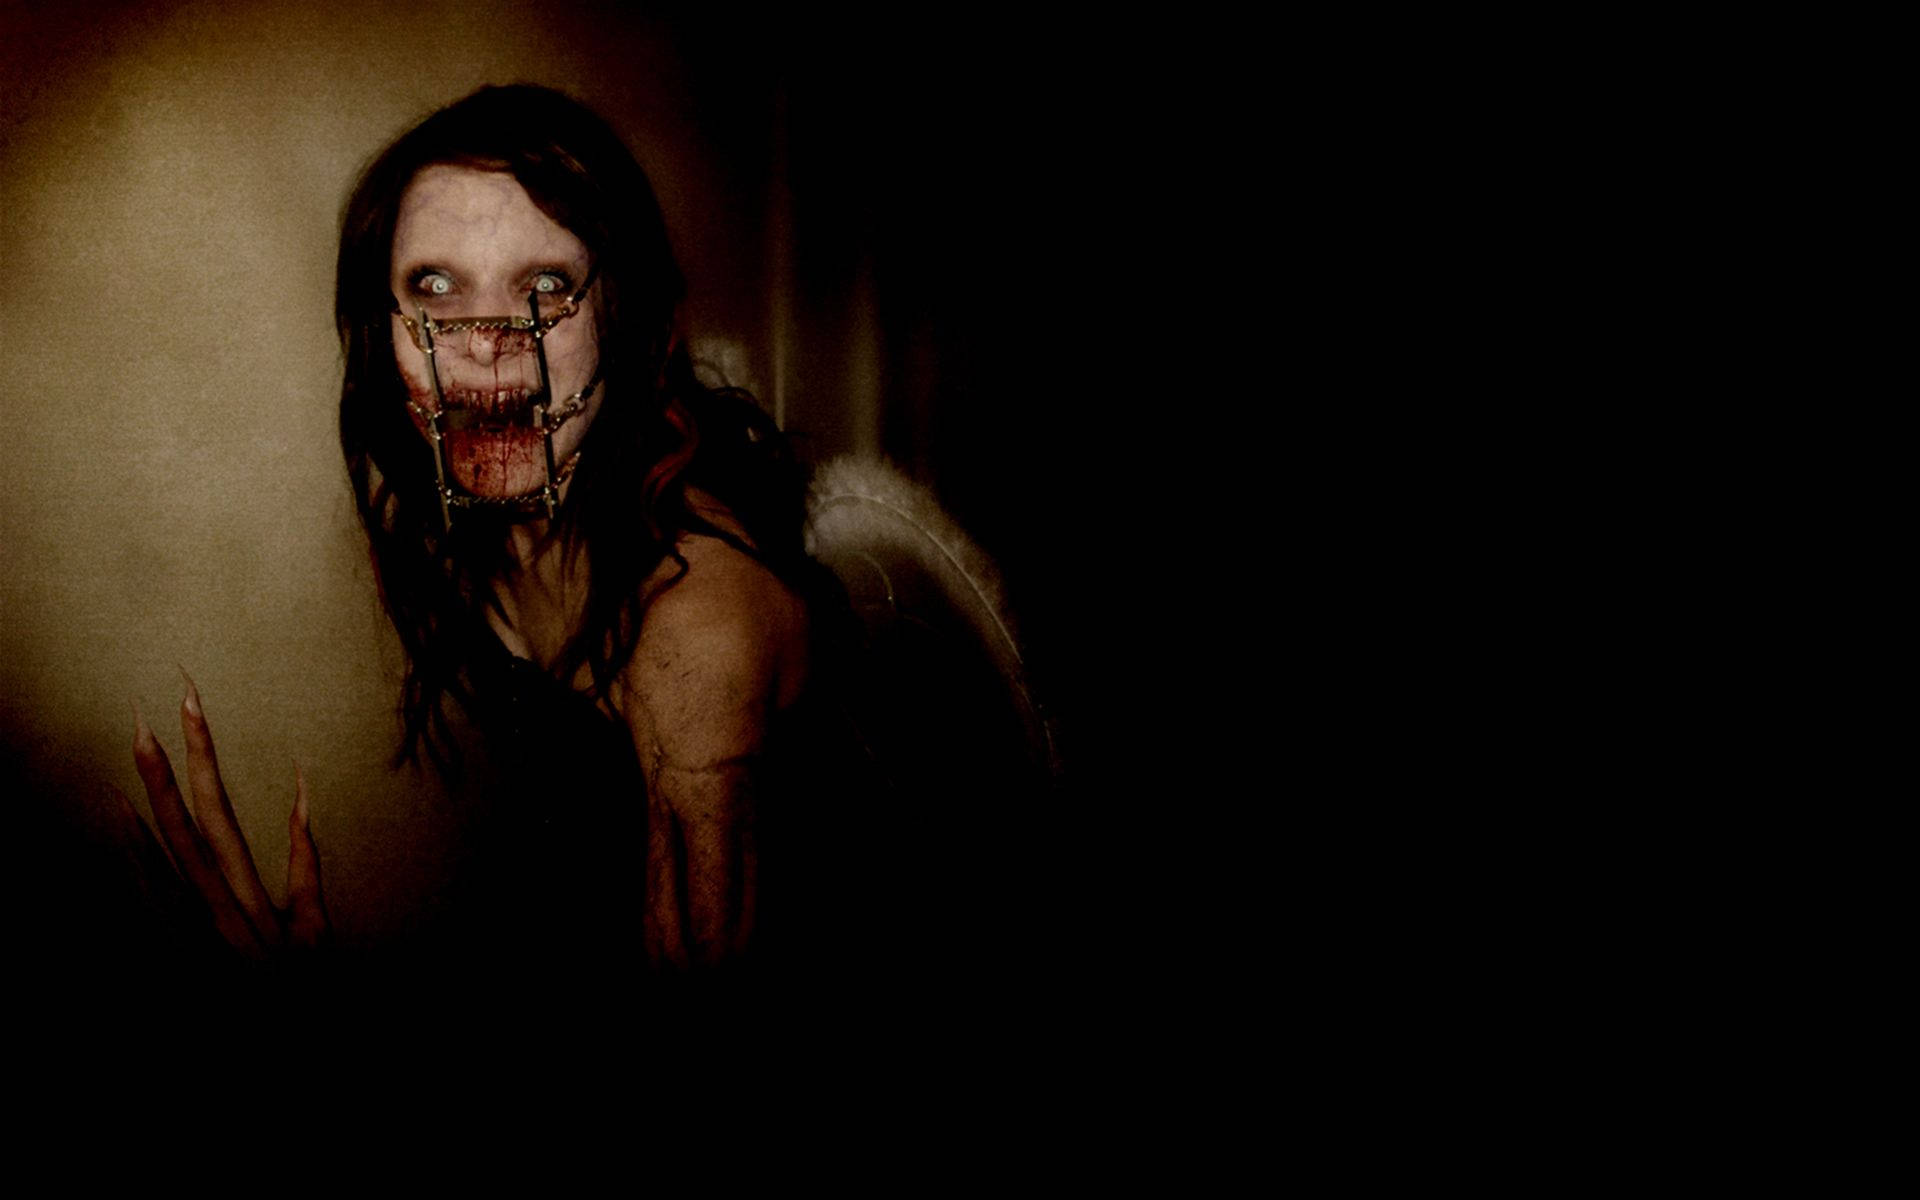 Creepy Vampire Zombie Girl Background